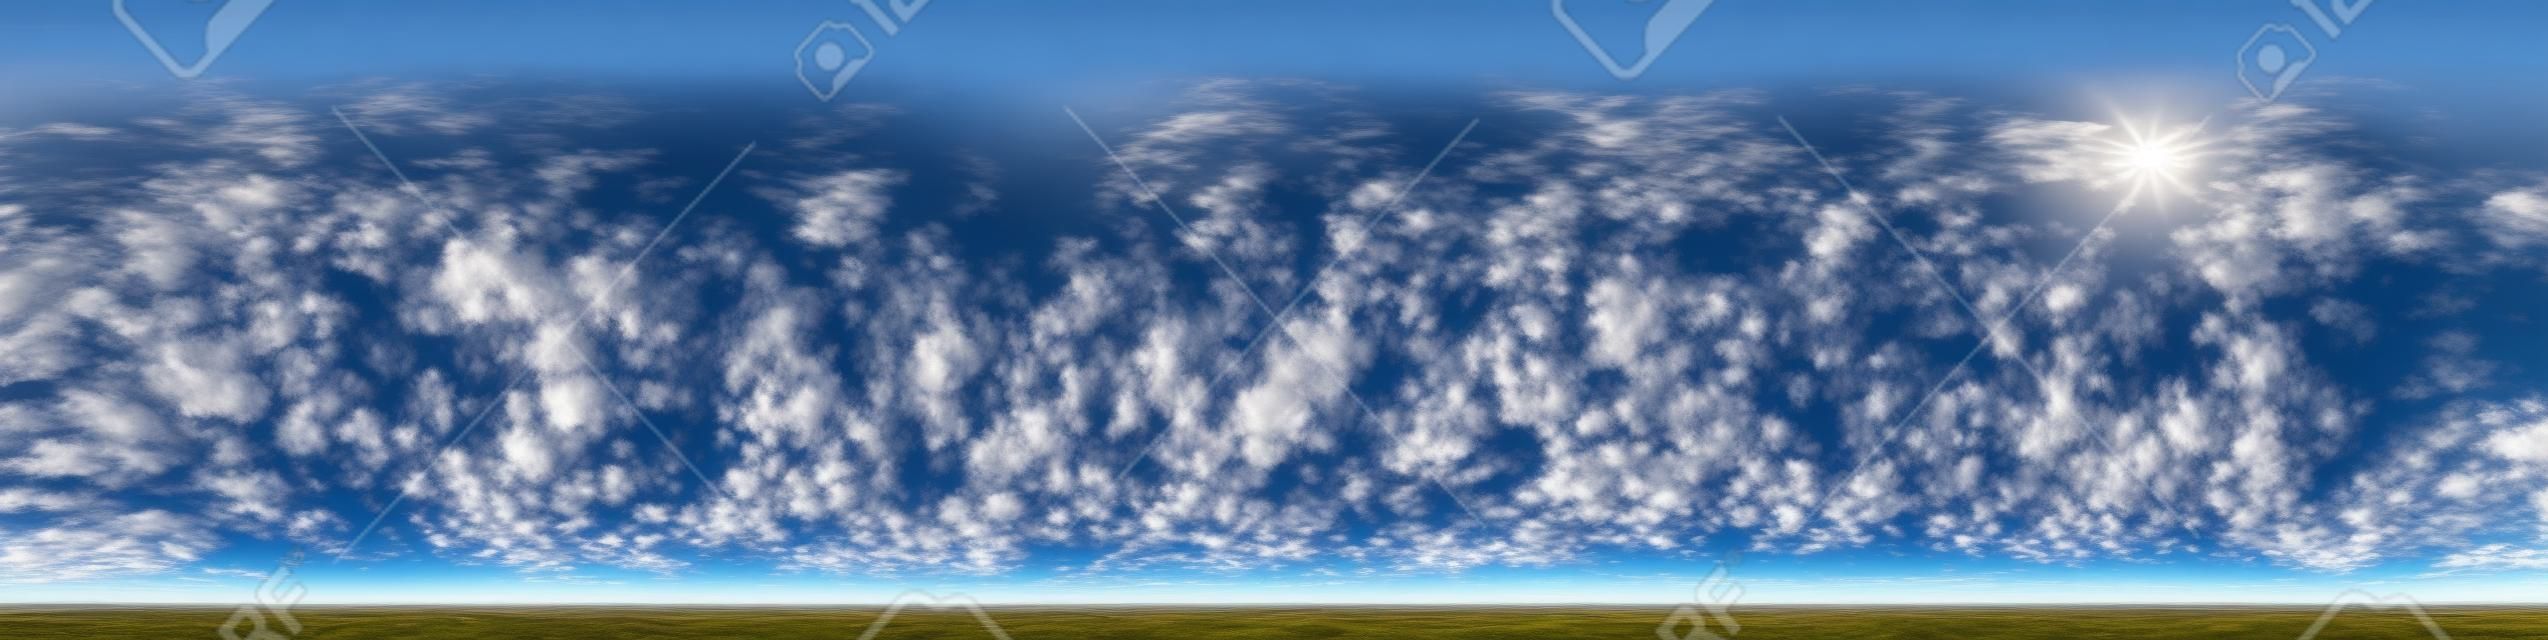 ciel bleu avec de beaux nuages impressionnants. Panorama hdri sans couture Vue d'angle à 360 degrés avec zénith pour une utilisation dans des graphiques 3D ou le développement de jeux en tant que dôme du ciel ou éditer une photo de drone